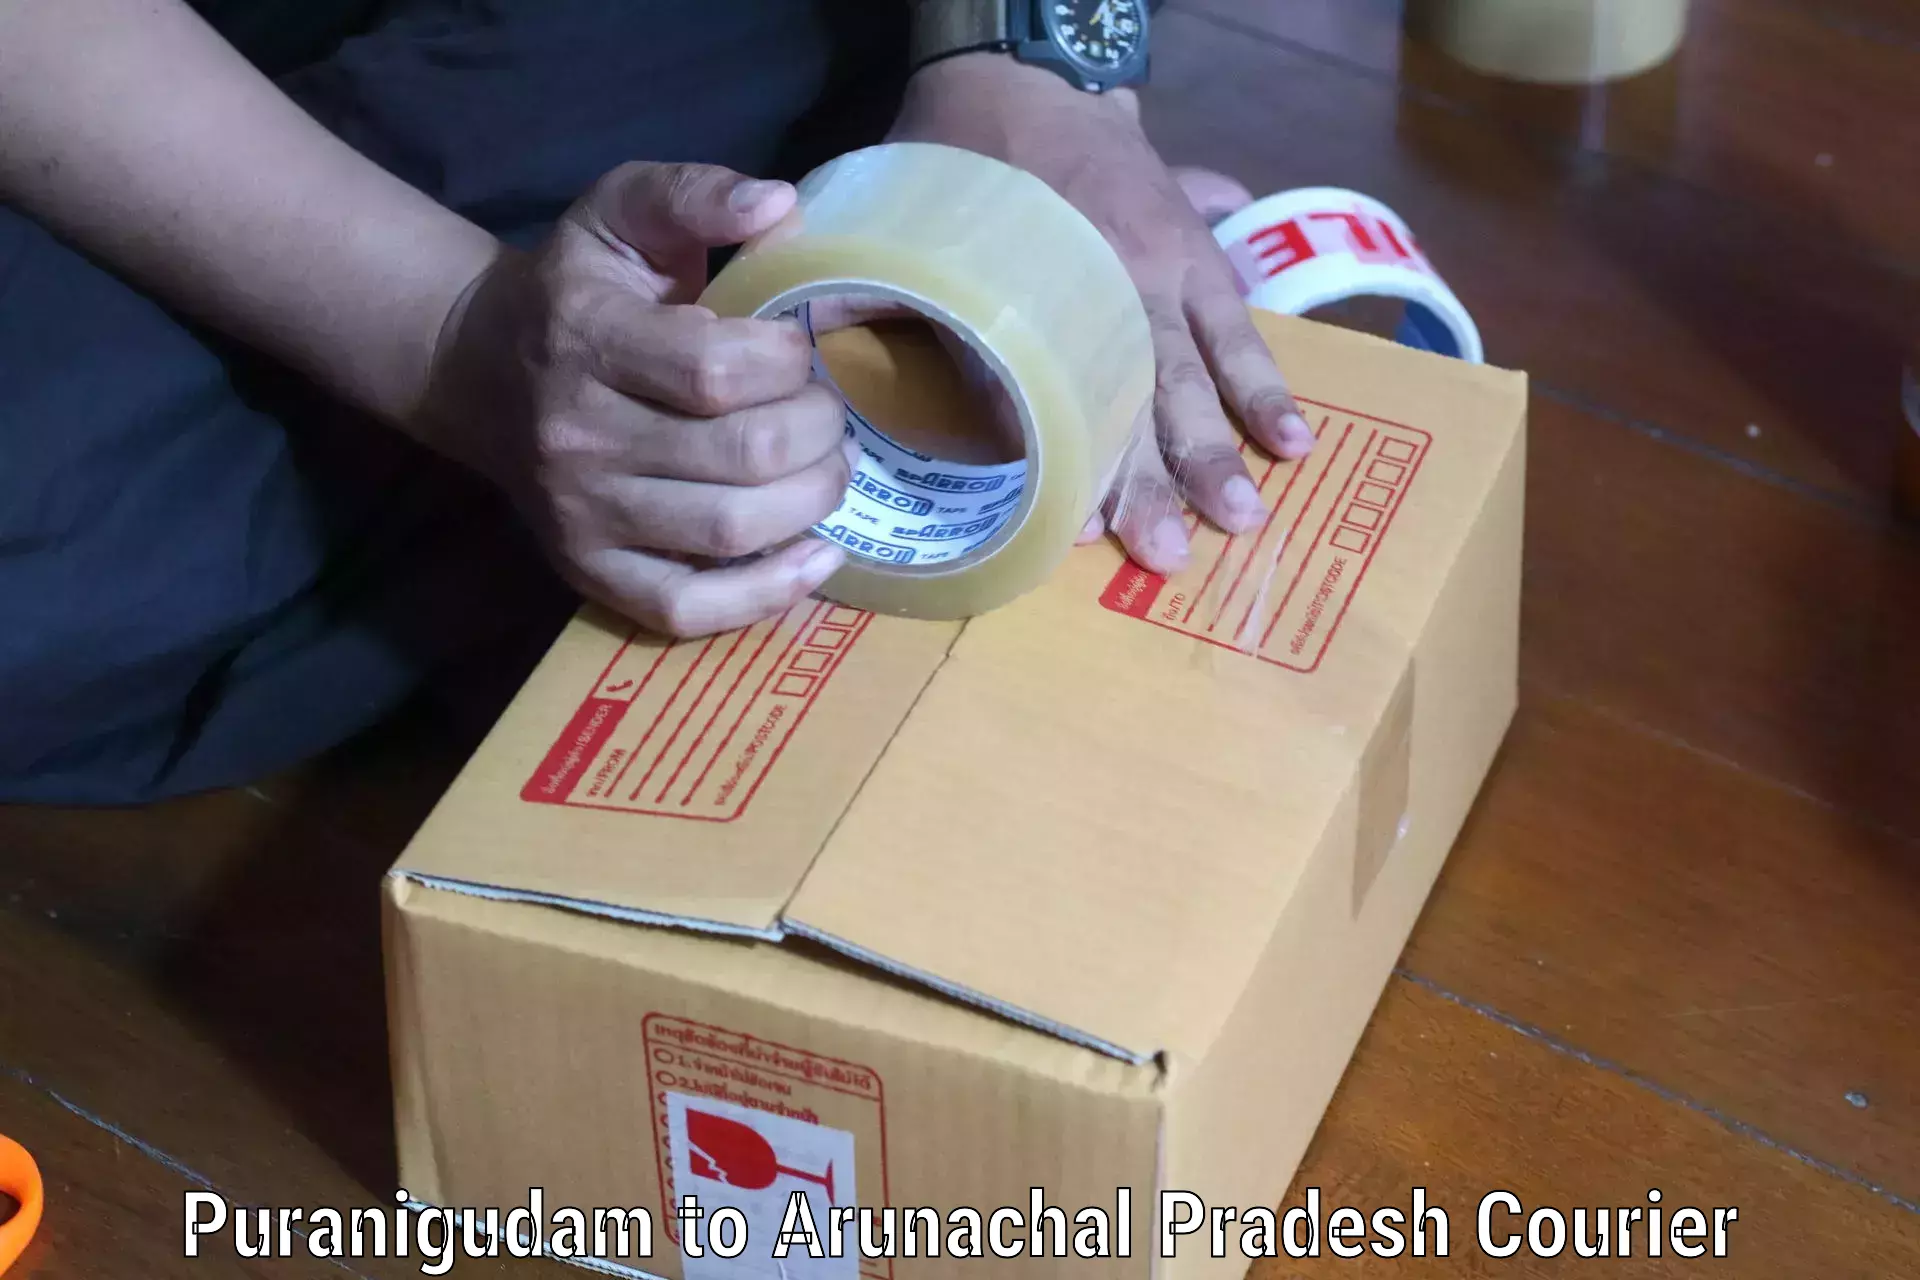 International courier networks Puranigudam to Dirang